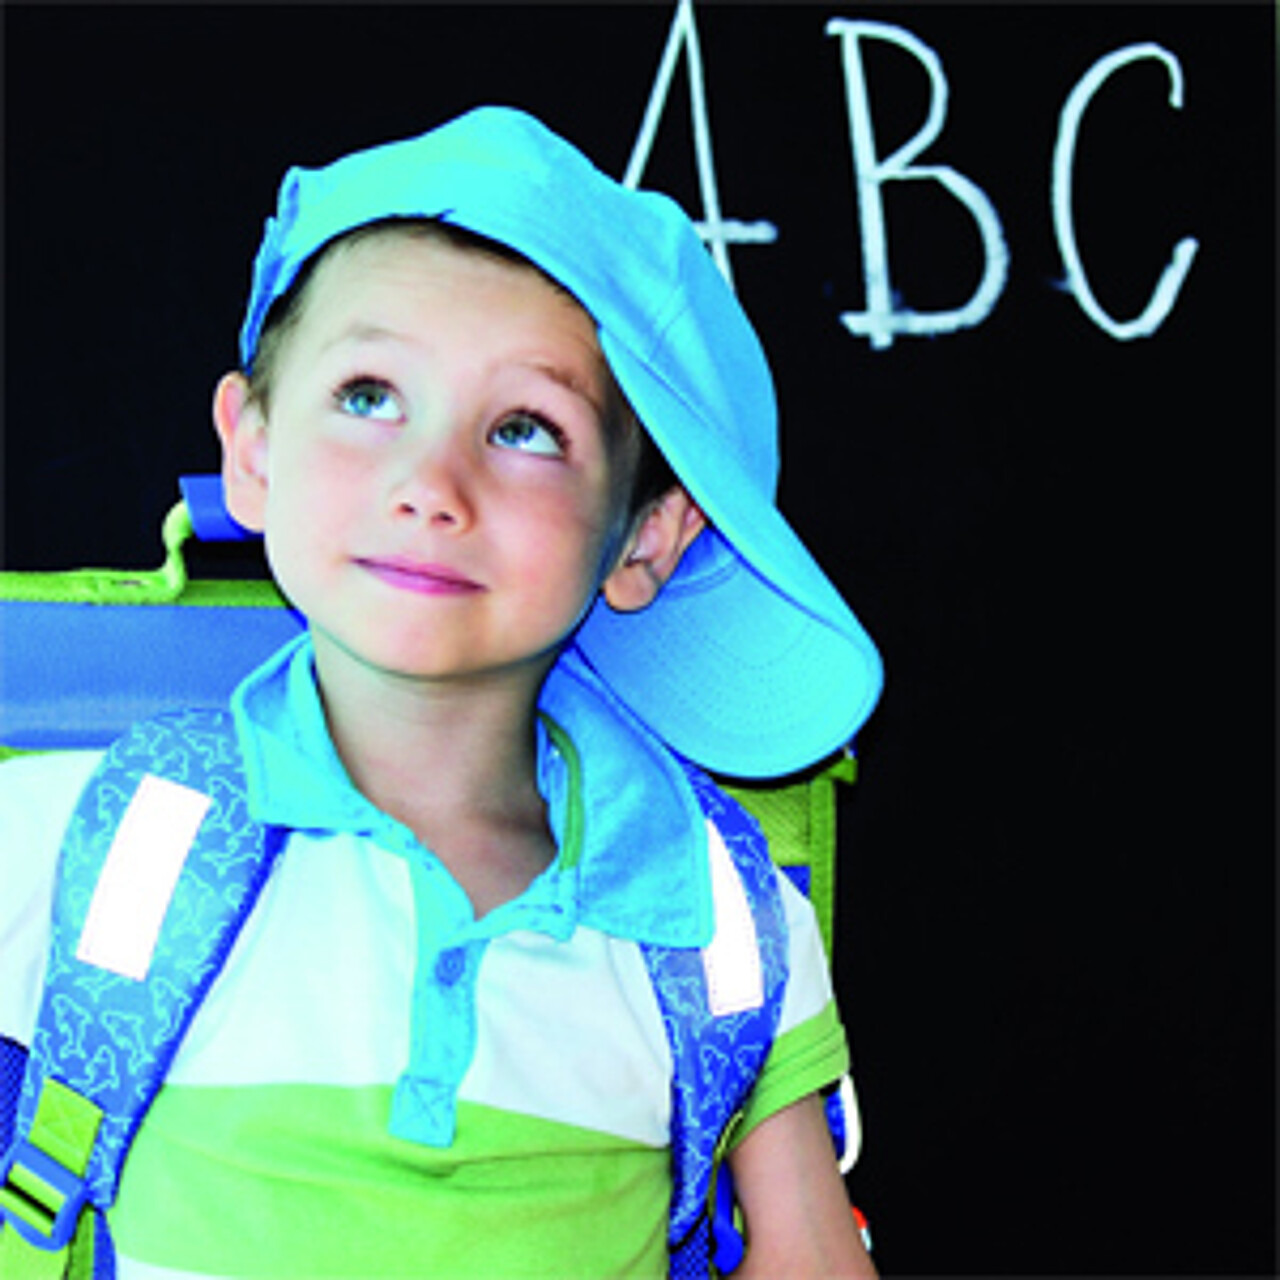 kleiner Junge mit Ranzen und Kapuzenmütze steht vor einer schwarzen Tafel, auf der ABC geschrieben steht